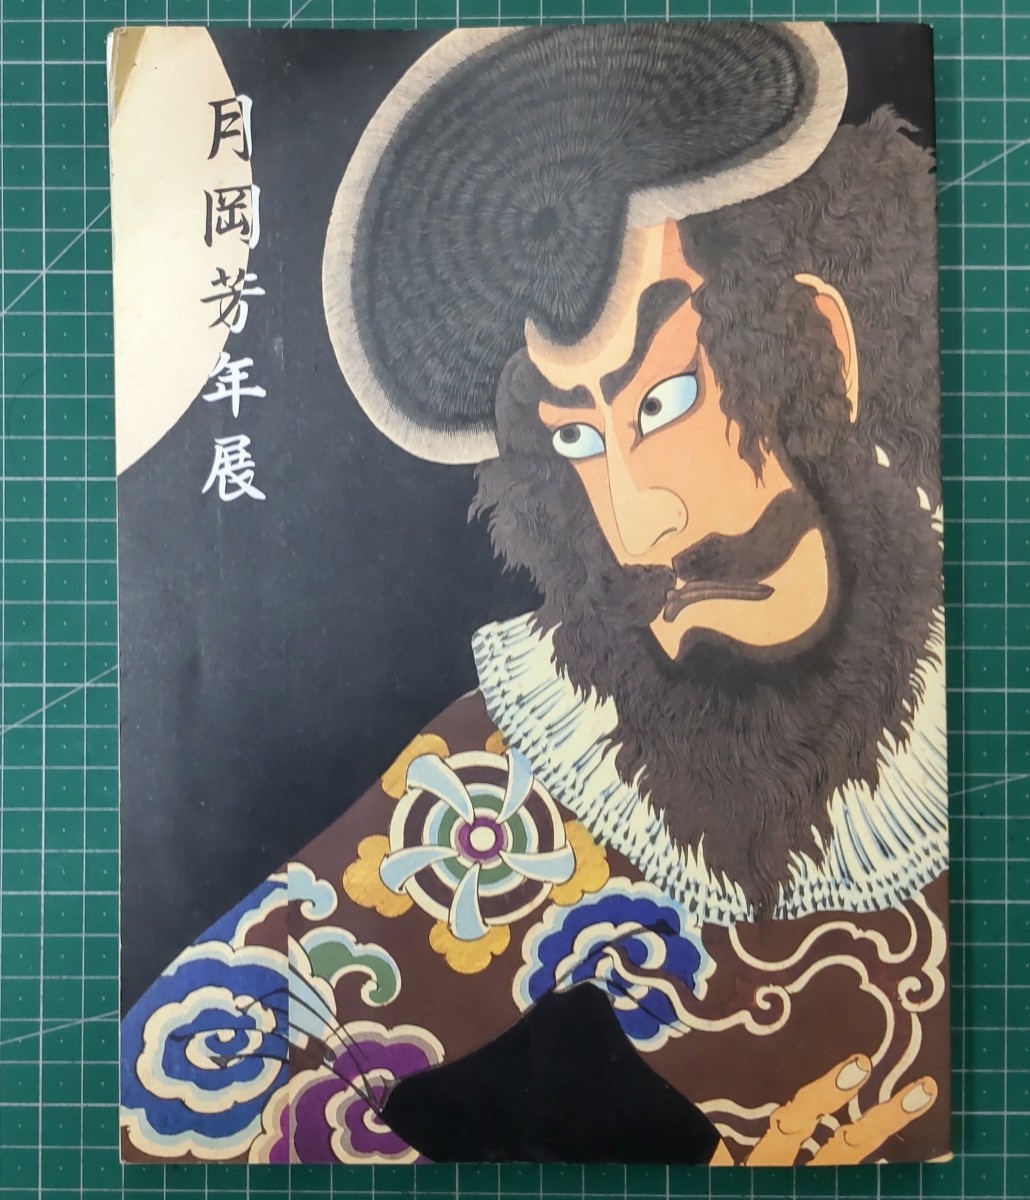 योशितोशी त्सुकिओका प्रदर्शनी द लास्ट जीनियस उकियो-ए आर्टिस्ट 1995 मित्सुकोशी म्यूज़ियम ऑफ़ आर्ट निहोन कीज़ई शिंबुन ●H2829, चित्रकारी, कला पुस्तक, कार्यों का संग्रह, सचित्र सूची